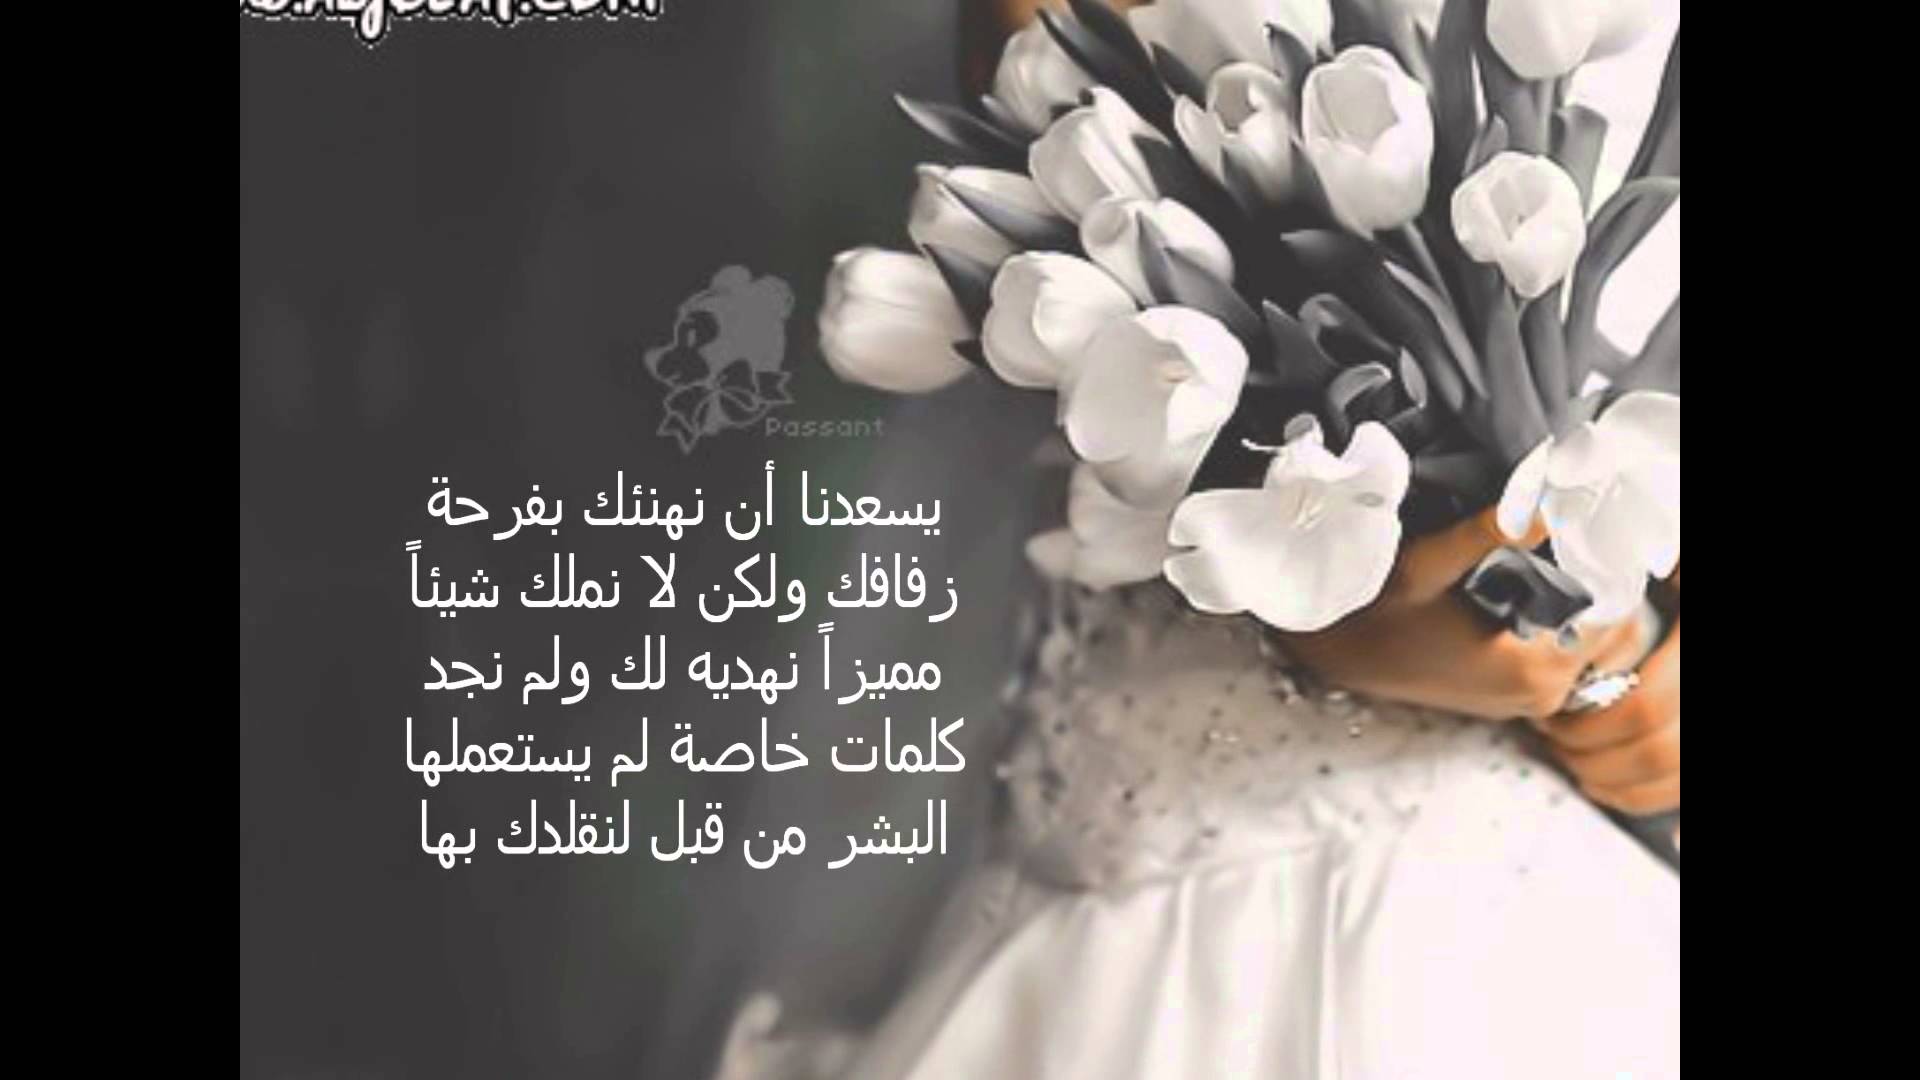 كلمات للعروس من صديقتها عبارات مباركة للعروص من صديقتها كيف